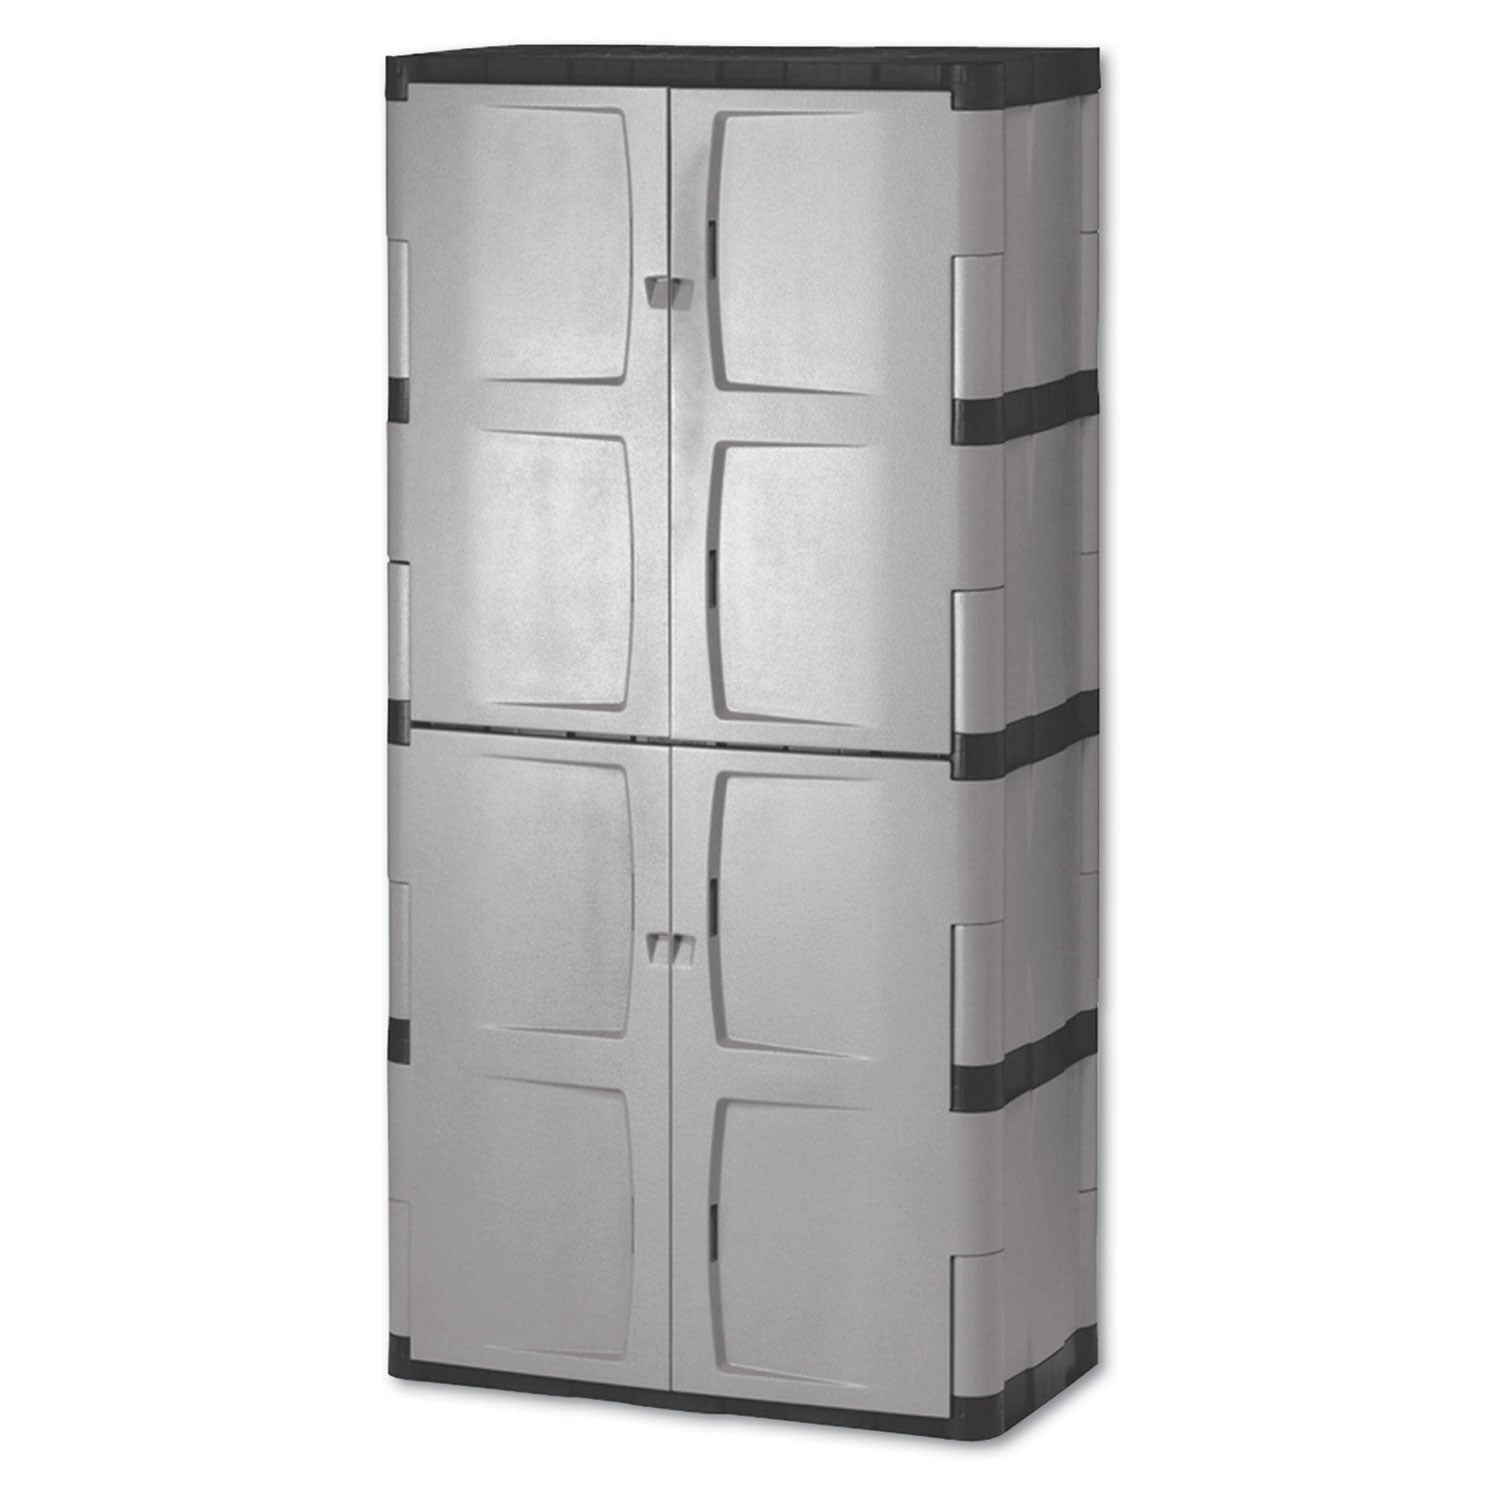 Double-Door Storage Cabinet - Base/Top, 36w x 18d x 72h, Gray/Black - 